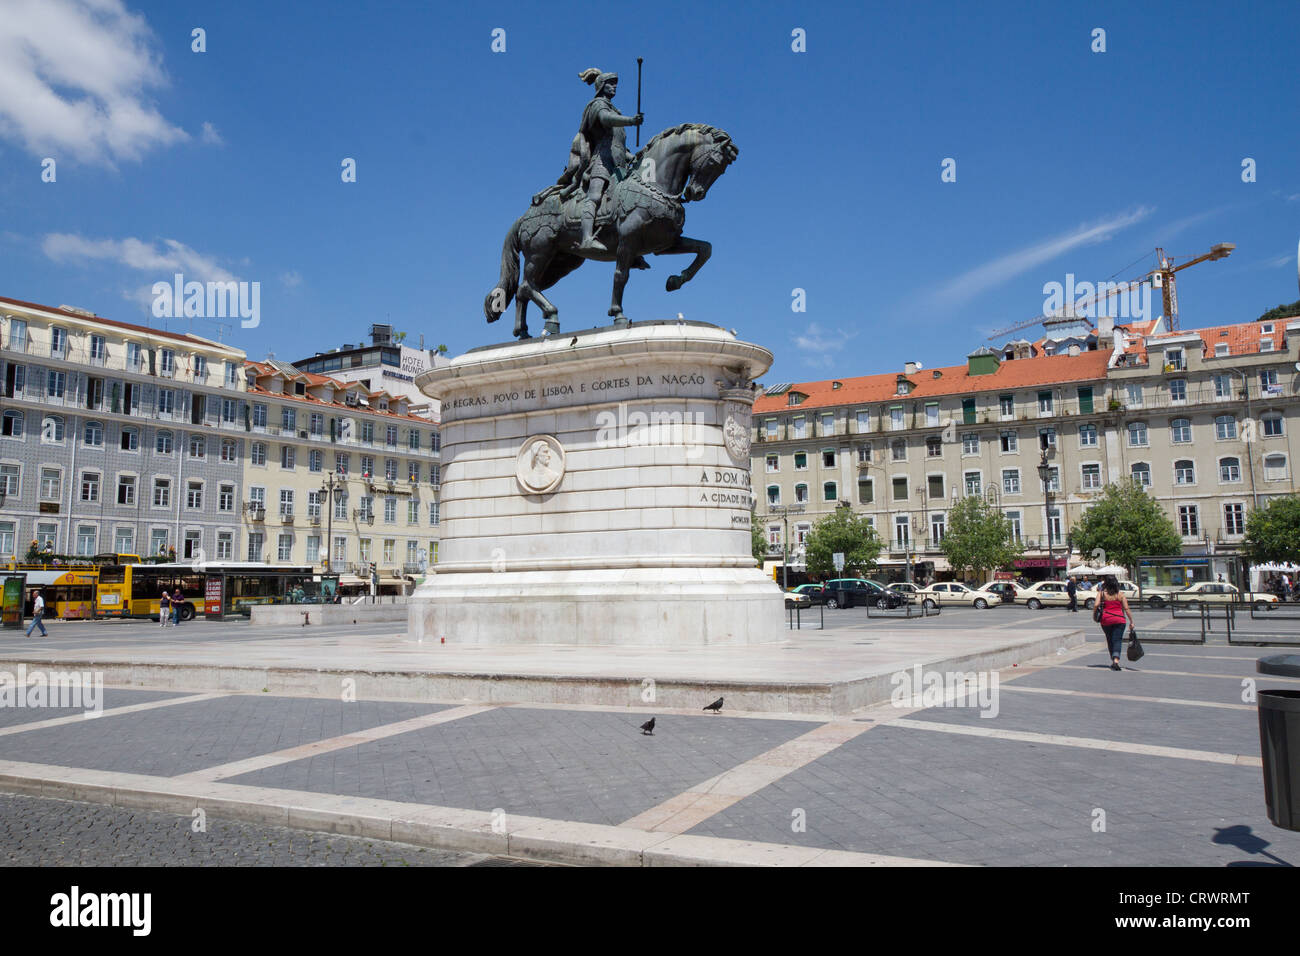 Statue du Roi João I à Figueiroa Square et le château Saint-Georges de Lisbonne, Portugal Banque D'Images